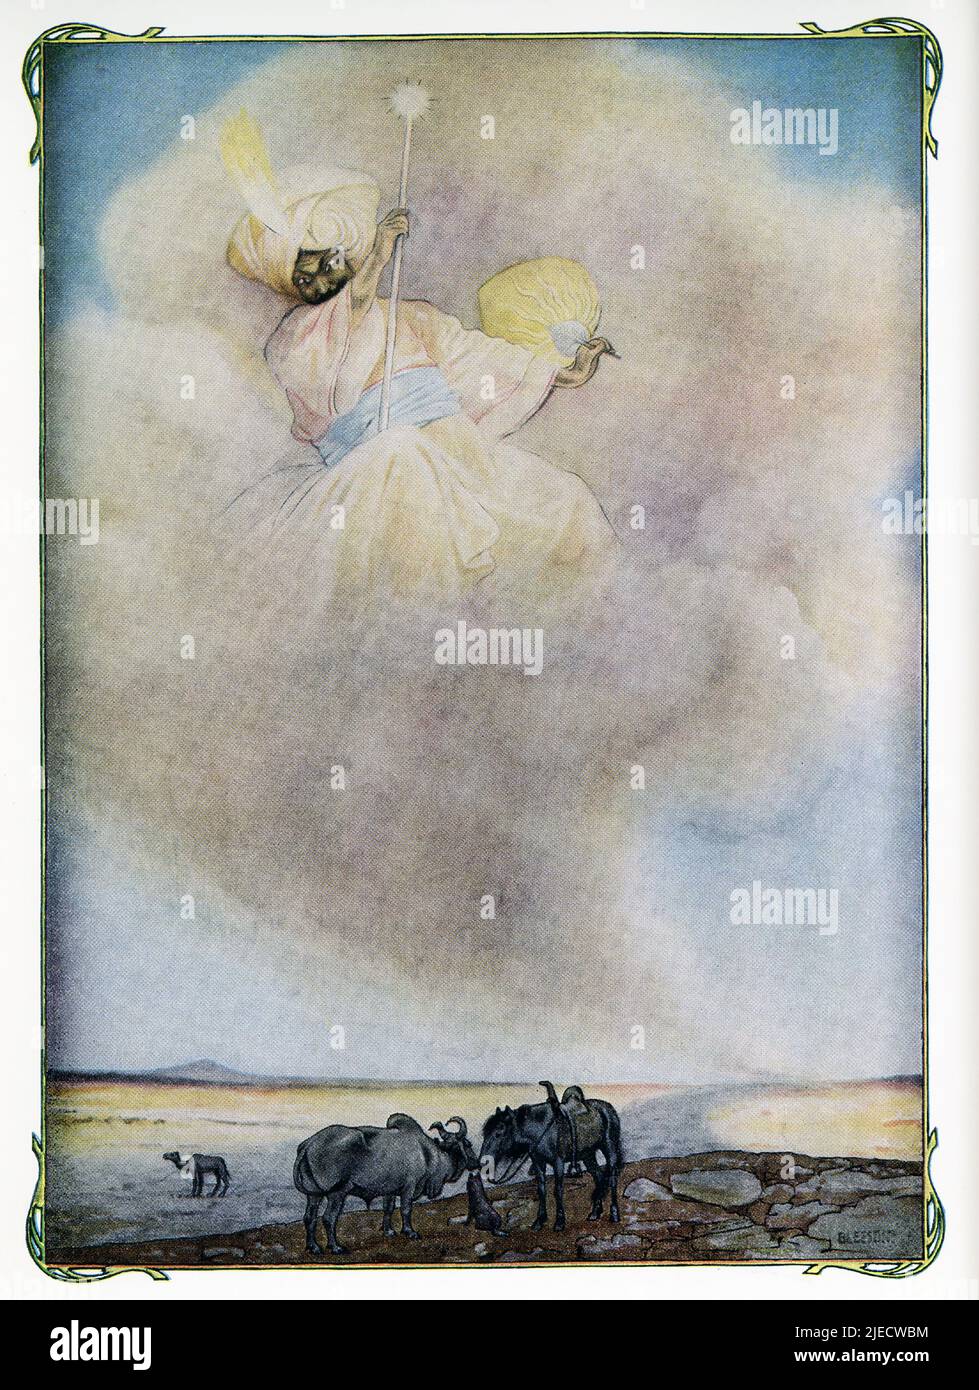 Dieses Bild von J M Gleeson aus dem Jahr 1912 illustriert Kiplings, wie das Kamel seine Klumpen-Geschichte bekam: Als die Tiere begannen, für den Menschen zu arbeiten, lebte das Kamel in einer Wüste, weil er untätig war und sich weigerte zu helfen. Der Hund, das Pferd und der Ochse drängten ihn alle, sich an ihrer Arbeit zu beteiligen, aber er antwortete nur „Humph!“ Sie beschwerten sich bei dem Mann, der sagte, dass es ihm leid tue, aber sie müssten einfach selbst länger arbeiten. Dann beschwerten sie sich bei dem Djinn, der für Alle Wüsten zuständig war. Also ging der Djinn zum Kamel und sagte ihm, er solle arbeiten, aber er würde immer noch nur „Humph!“ sagen. Die Djinn machte eine Magie, die die aufpuffte Stockfoto